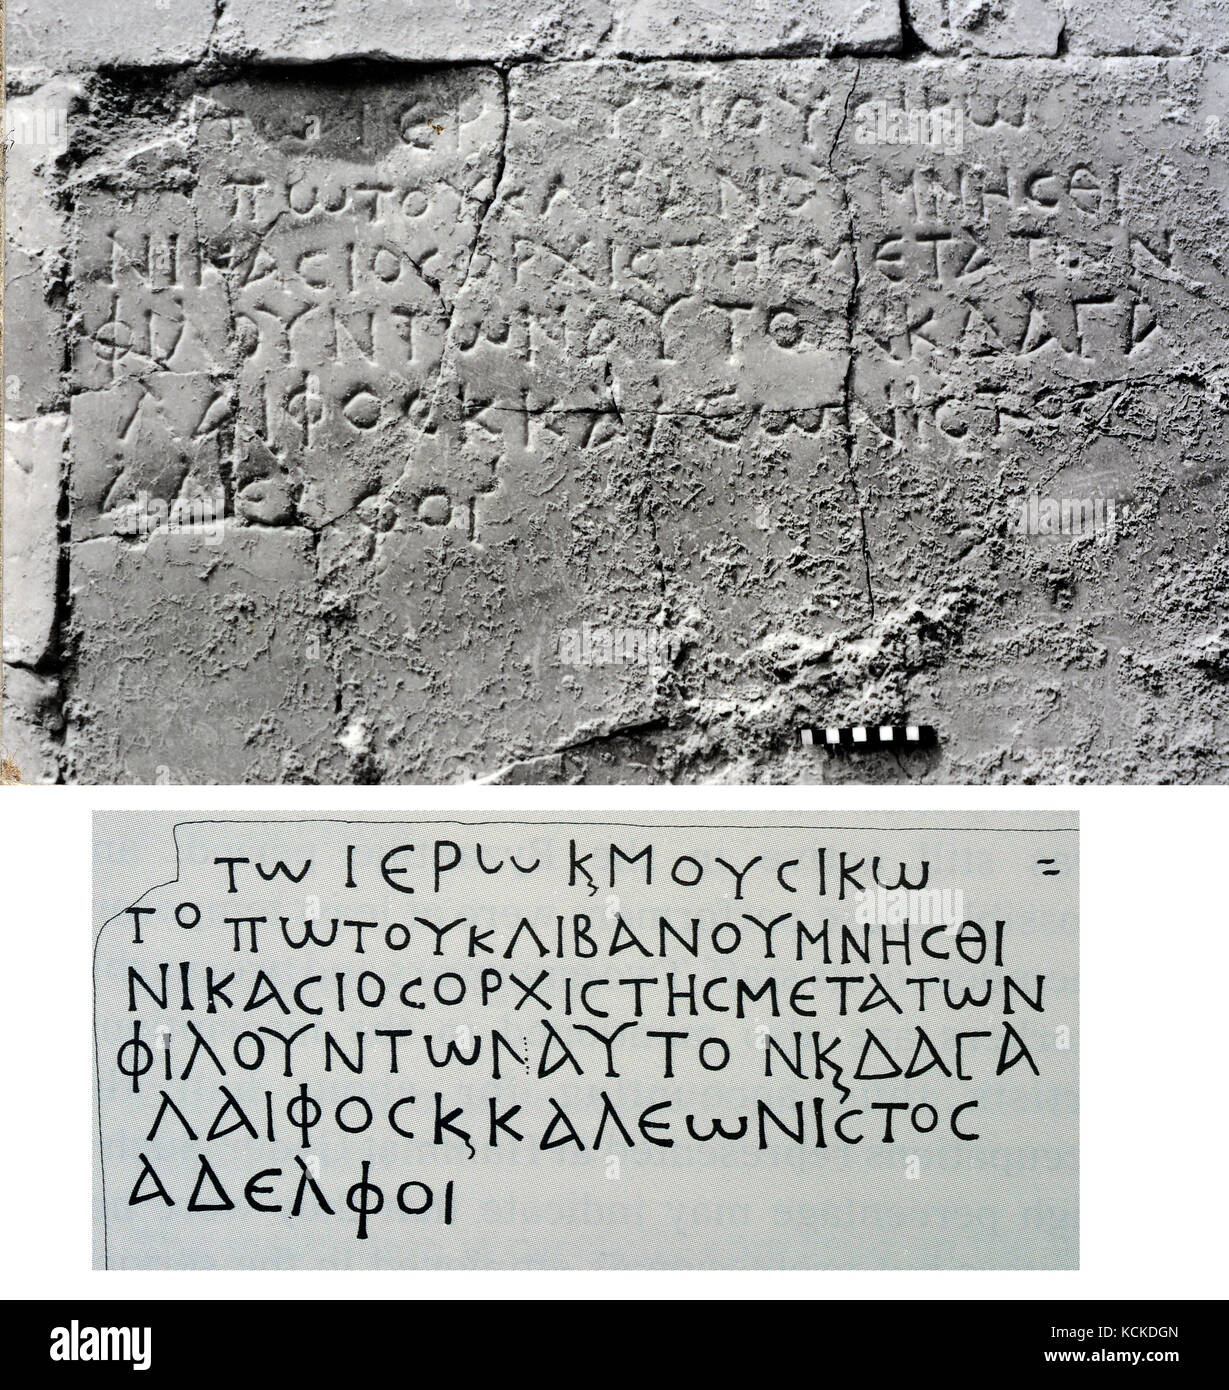 6155-1- Hamat Gader, iscrizione greca dal periodo romano i bagni nel sud del Golan vicino al mare di Galilea Foto Stock